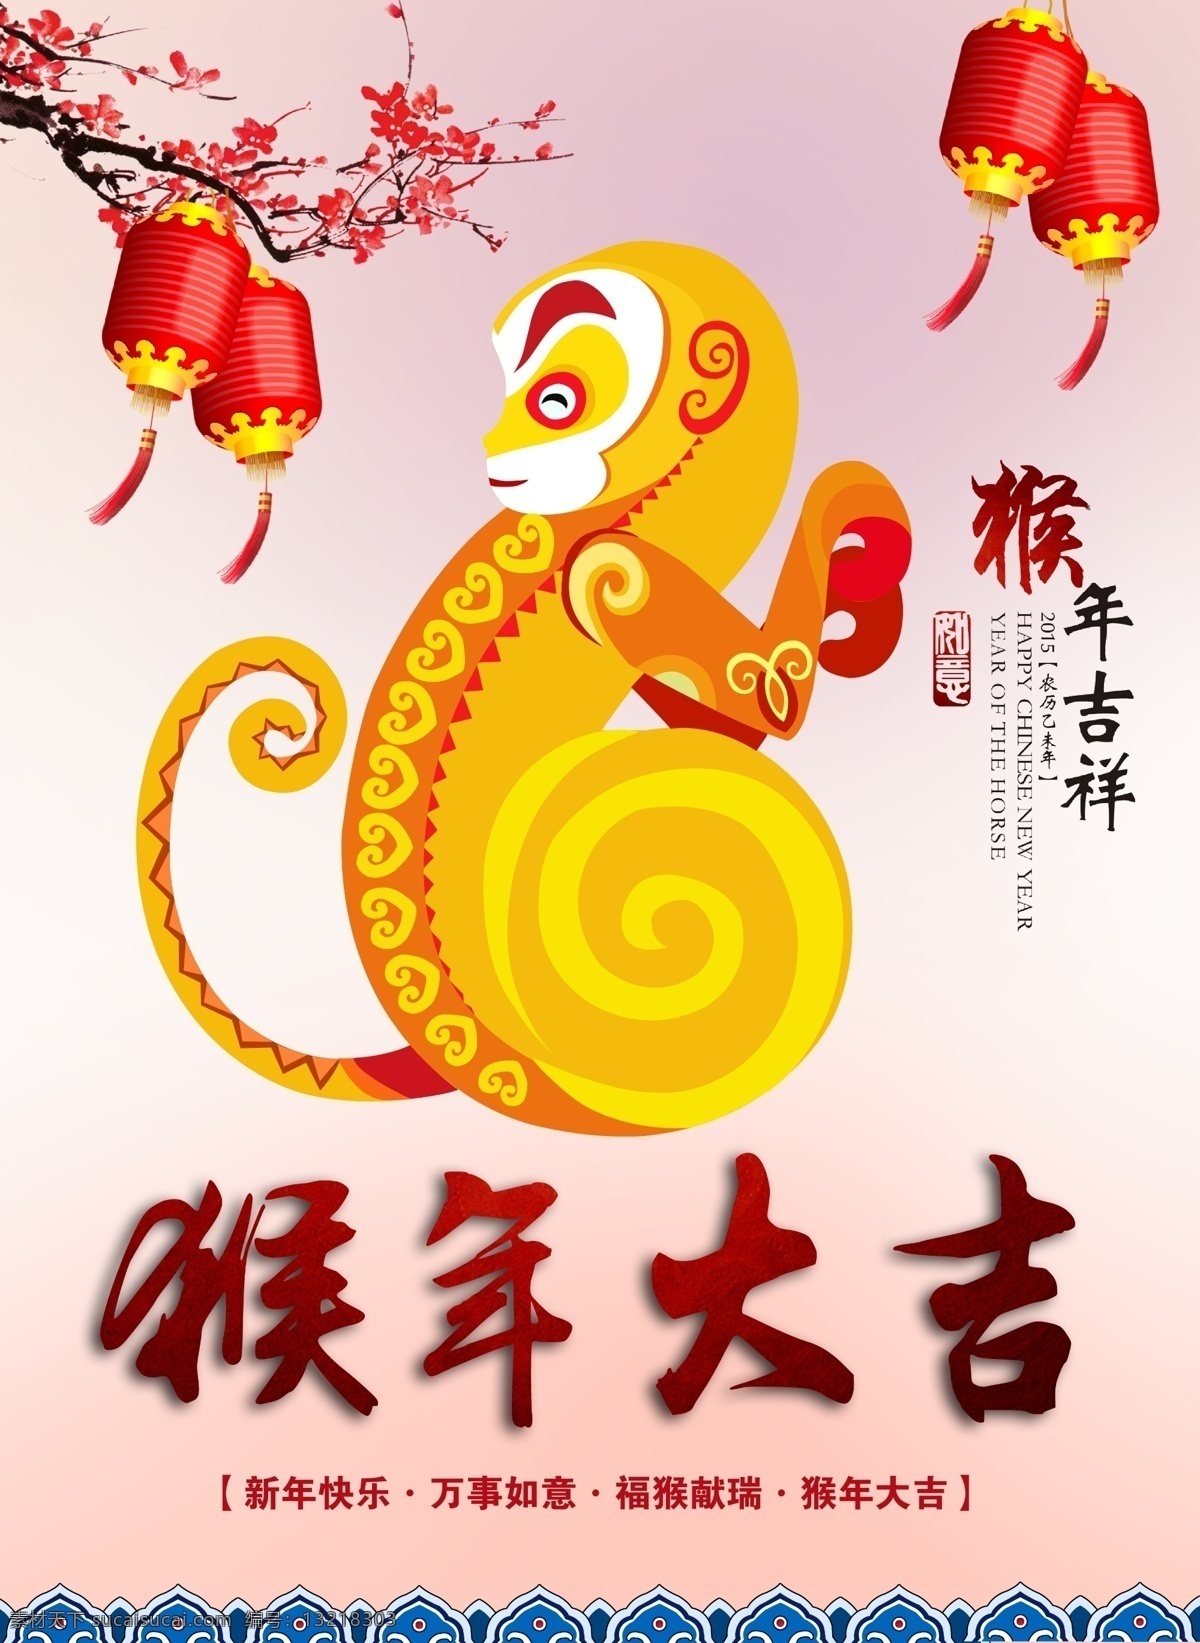 中国 风 猴年 大吉 2016猴年 2016字体 猴年大吉 猴年贺卡 2016 年 贺卡 商业海报 促销海报 新年素材 白色